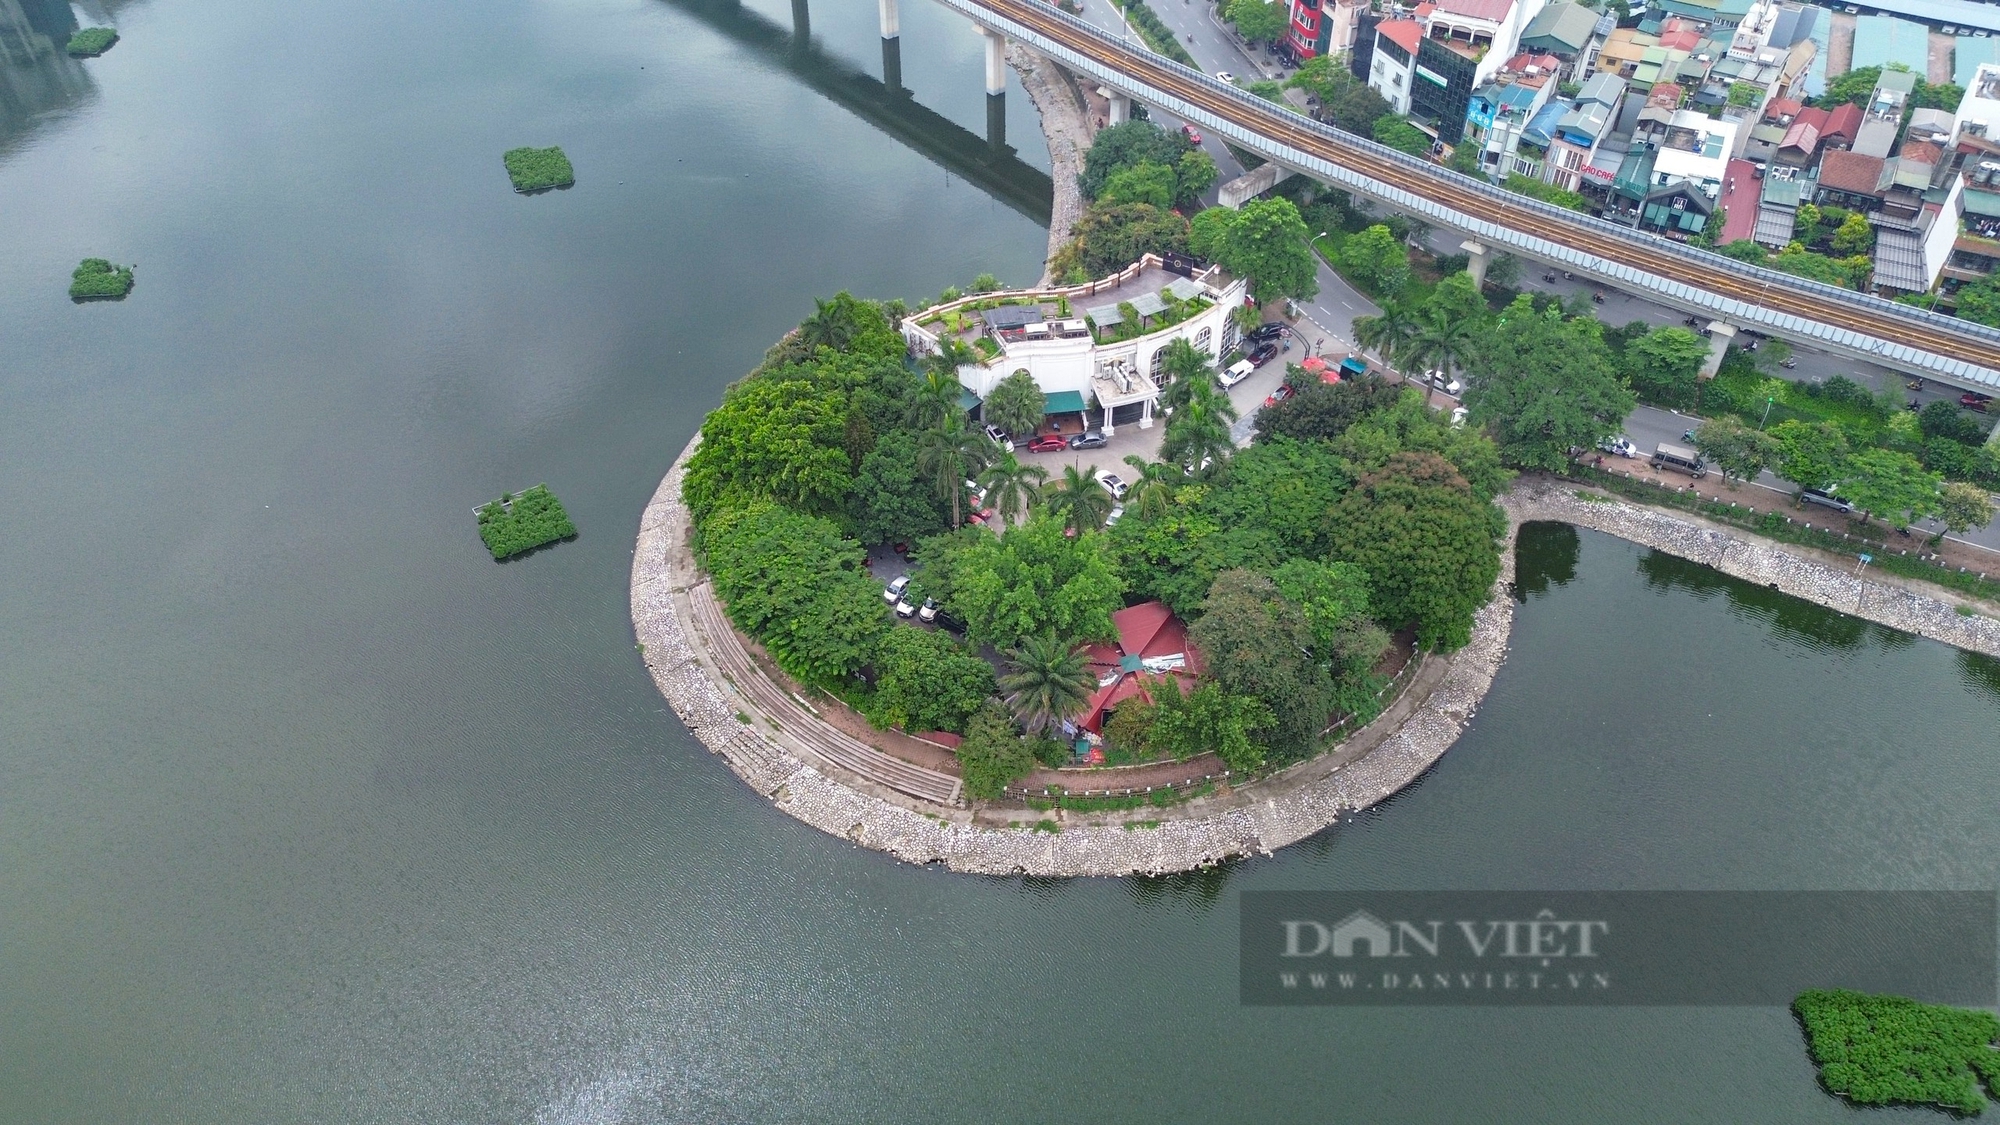 Khu vực hồ nước rộng 13,5 ha được Hà Nội chọn phát triển kinh tế đêm có gì đặc biệt?- Ảnh 3.